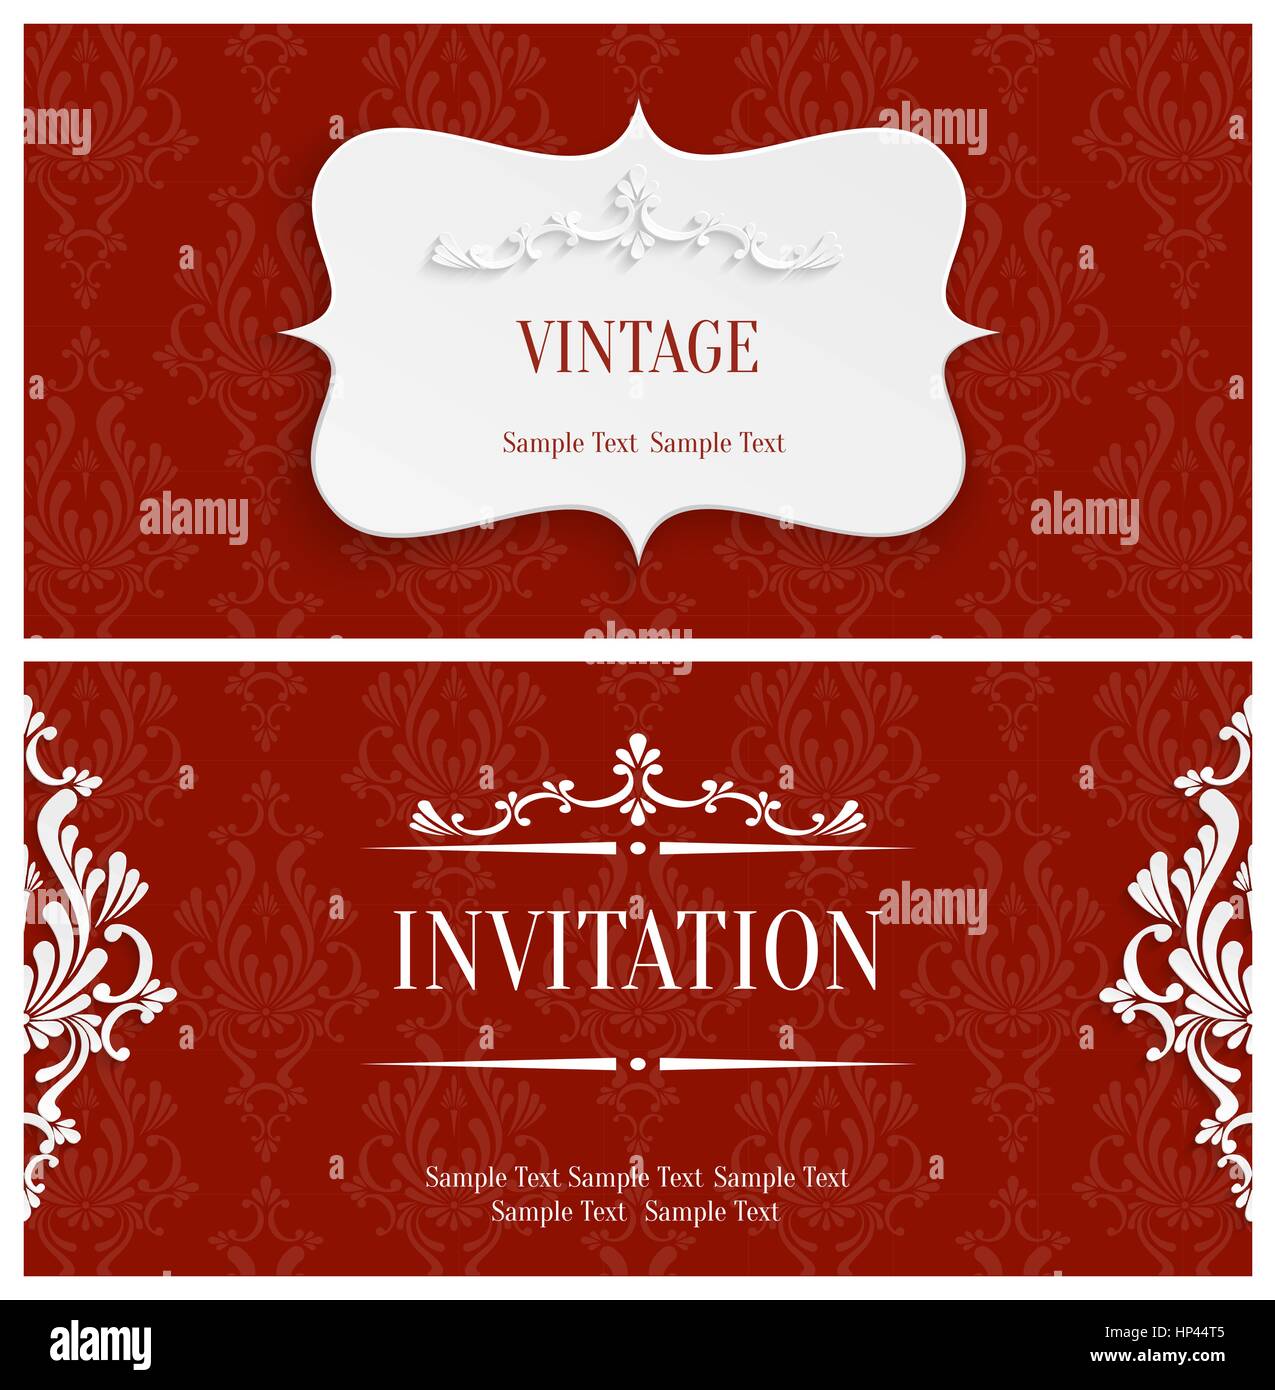 Vettore Vintage rosso sfondo con 3d Floral Pattern di Damasco per il messaggio di saluto o scheda di invito Design in carta tagliata Style Illustrazione Vettoriale